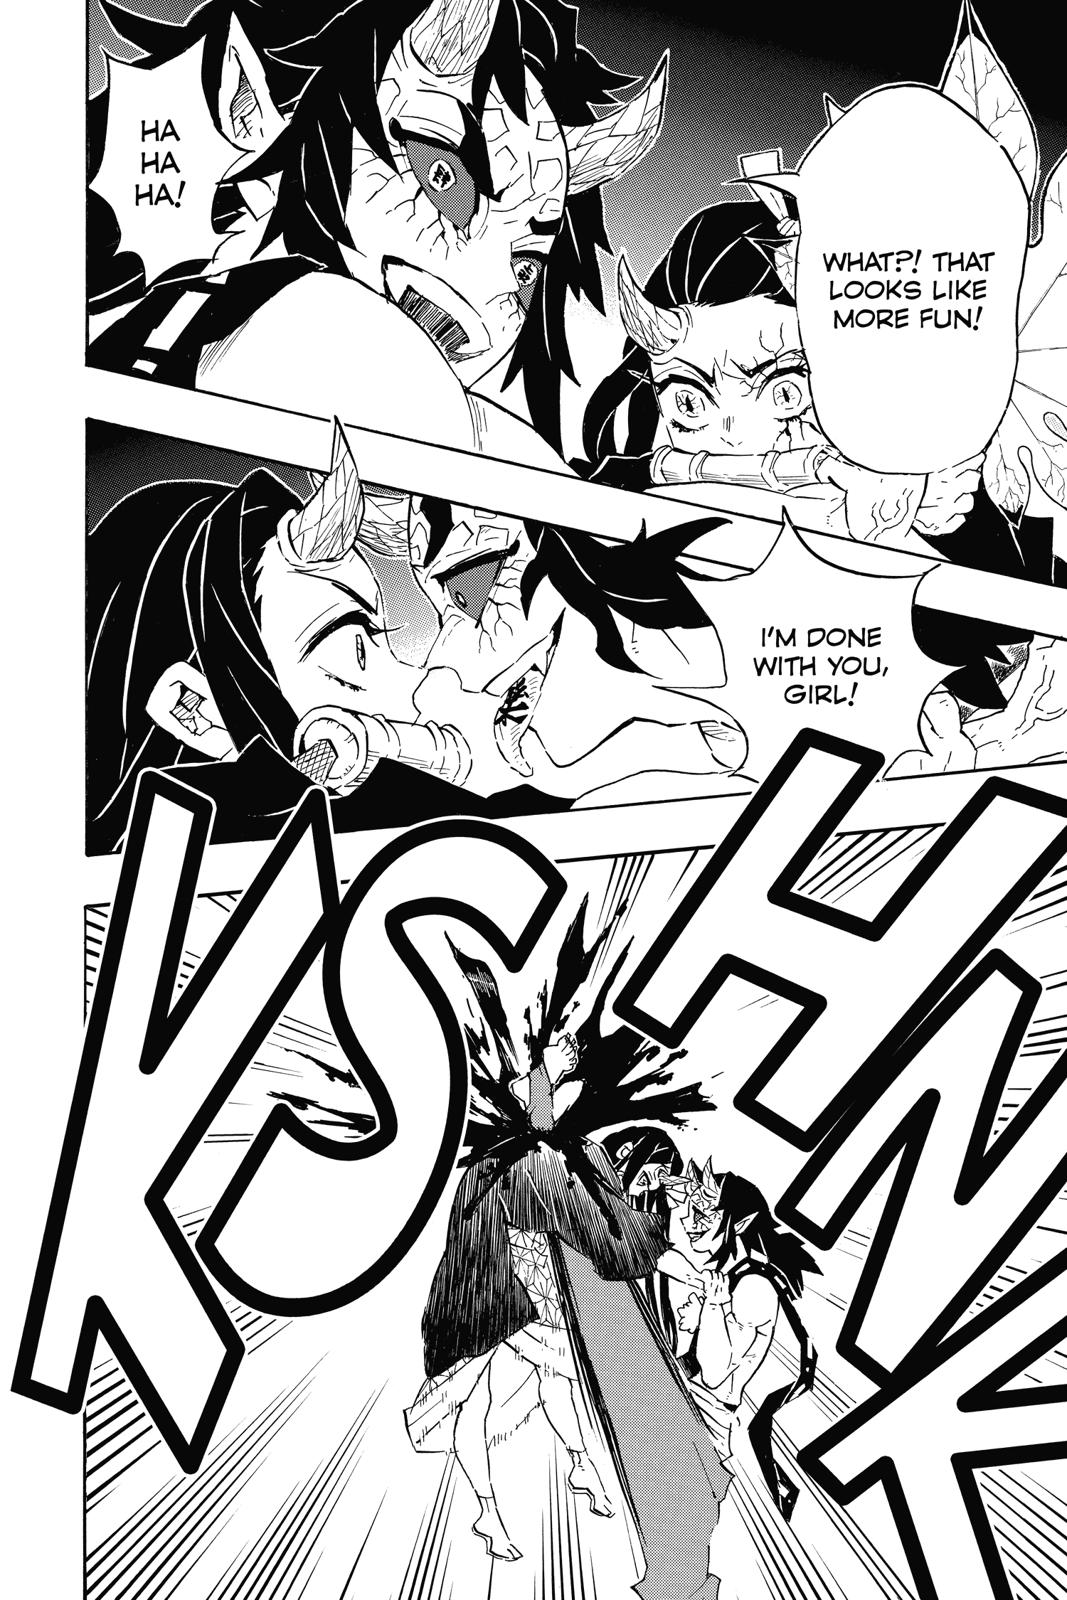 Demon Slayer Manga Manga Chapter - 109 - image 9